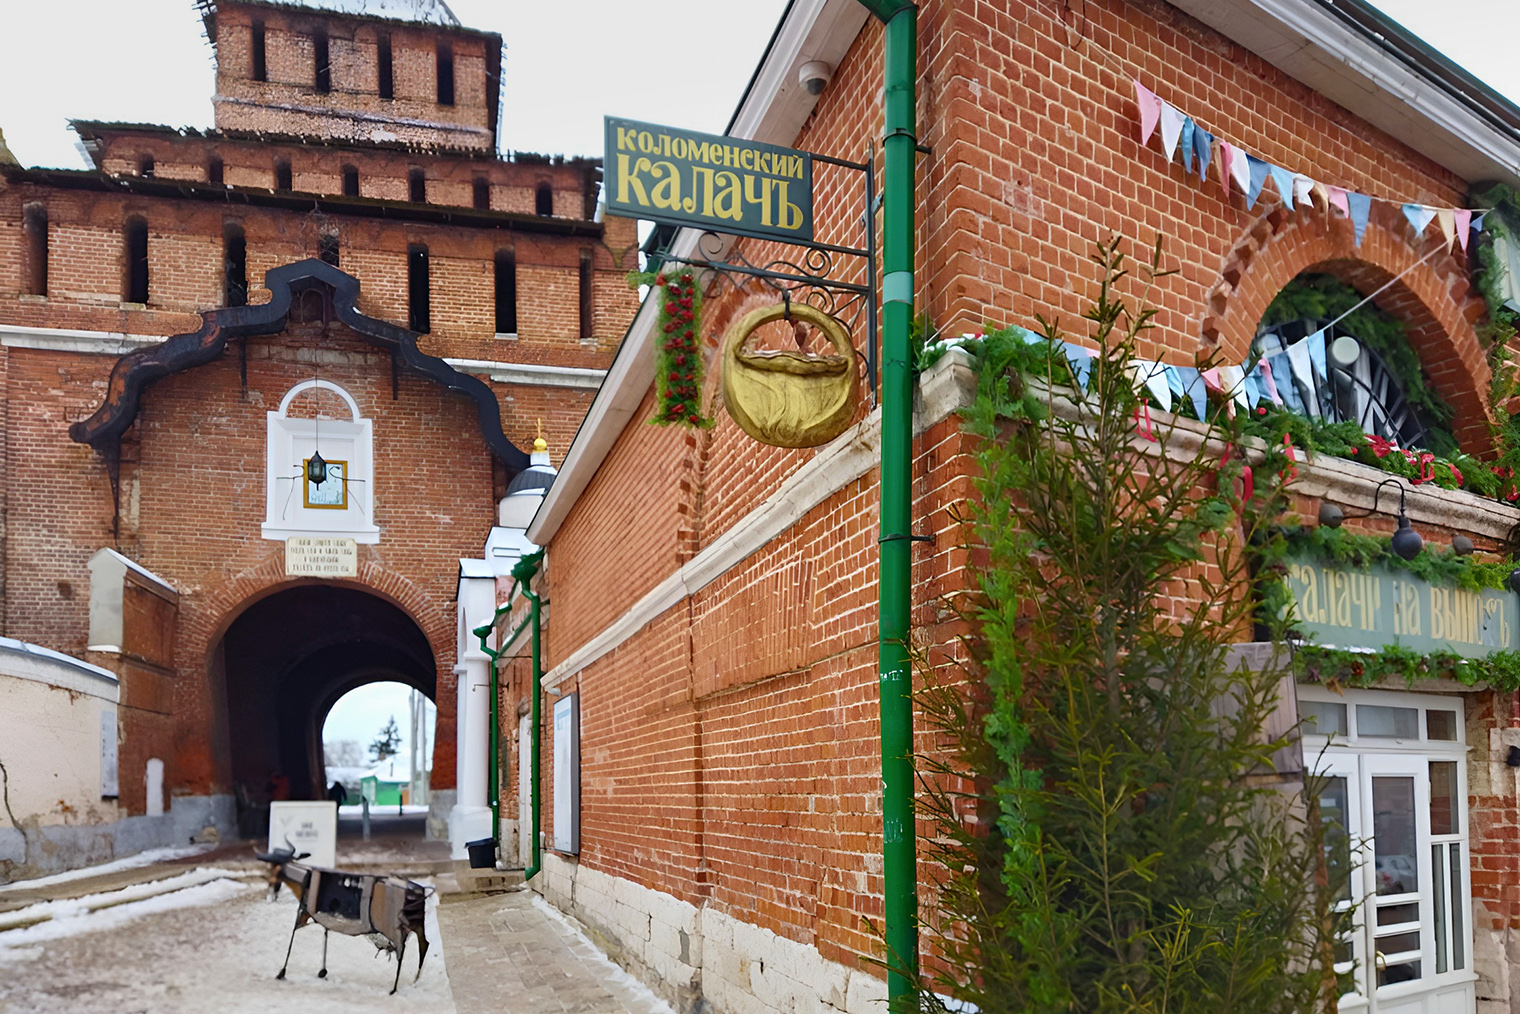 За углом «Калачной» — Пятницкие ворота кремля и вход в «Музей-навигатор». Это туристический инфоцентр, там можно забронировать экскурсии по кремлю, в «Калачную», Музей пастилы и другие интересные места